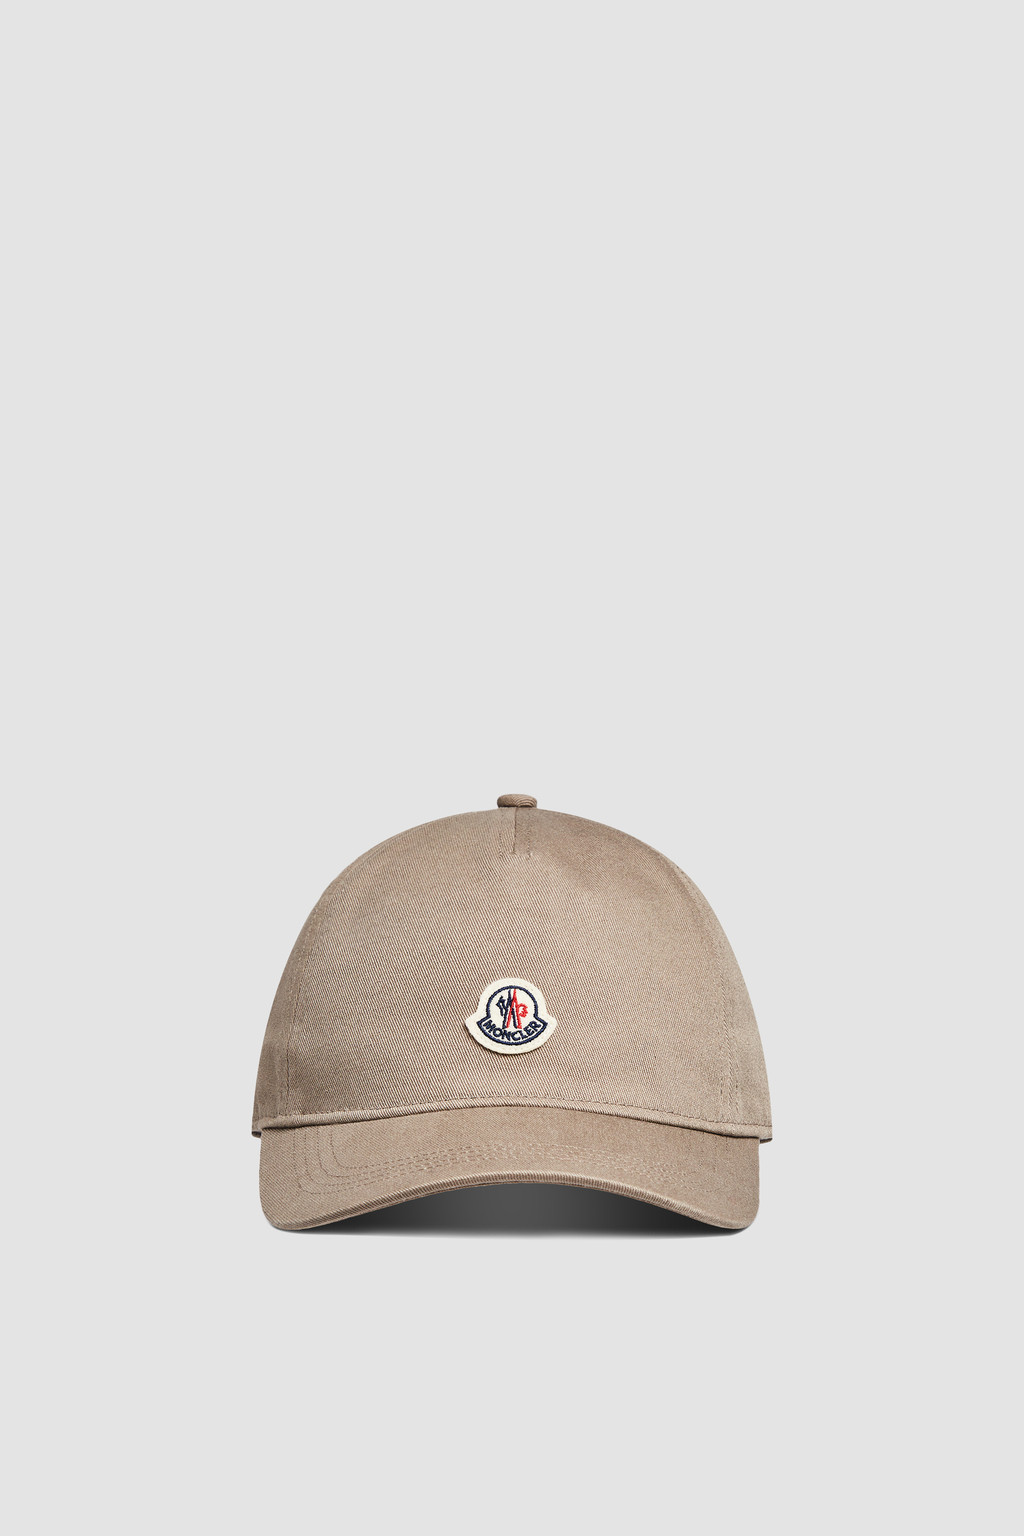 モンクレール キャップ - 帽子